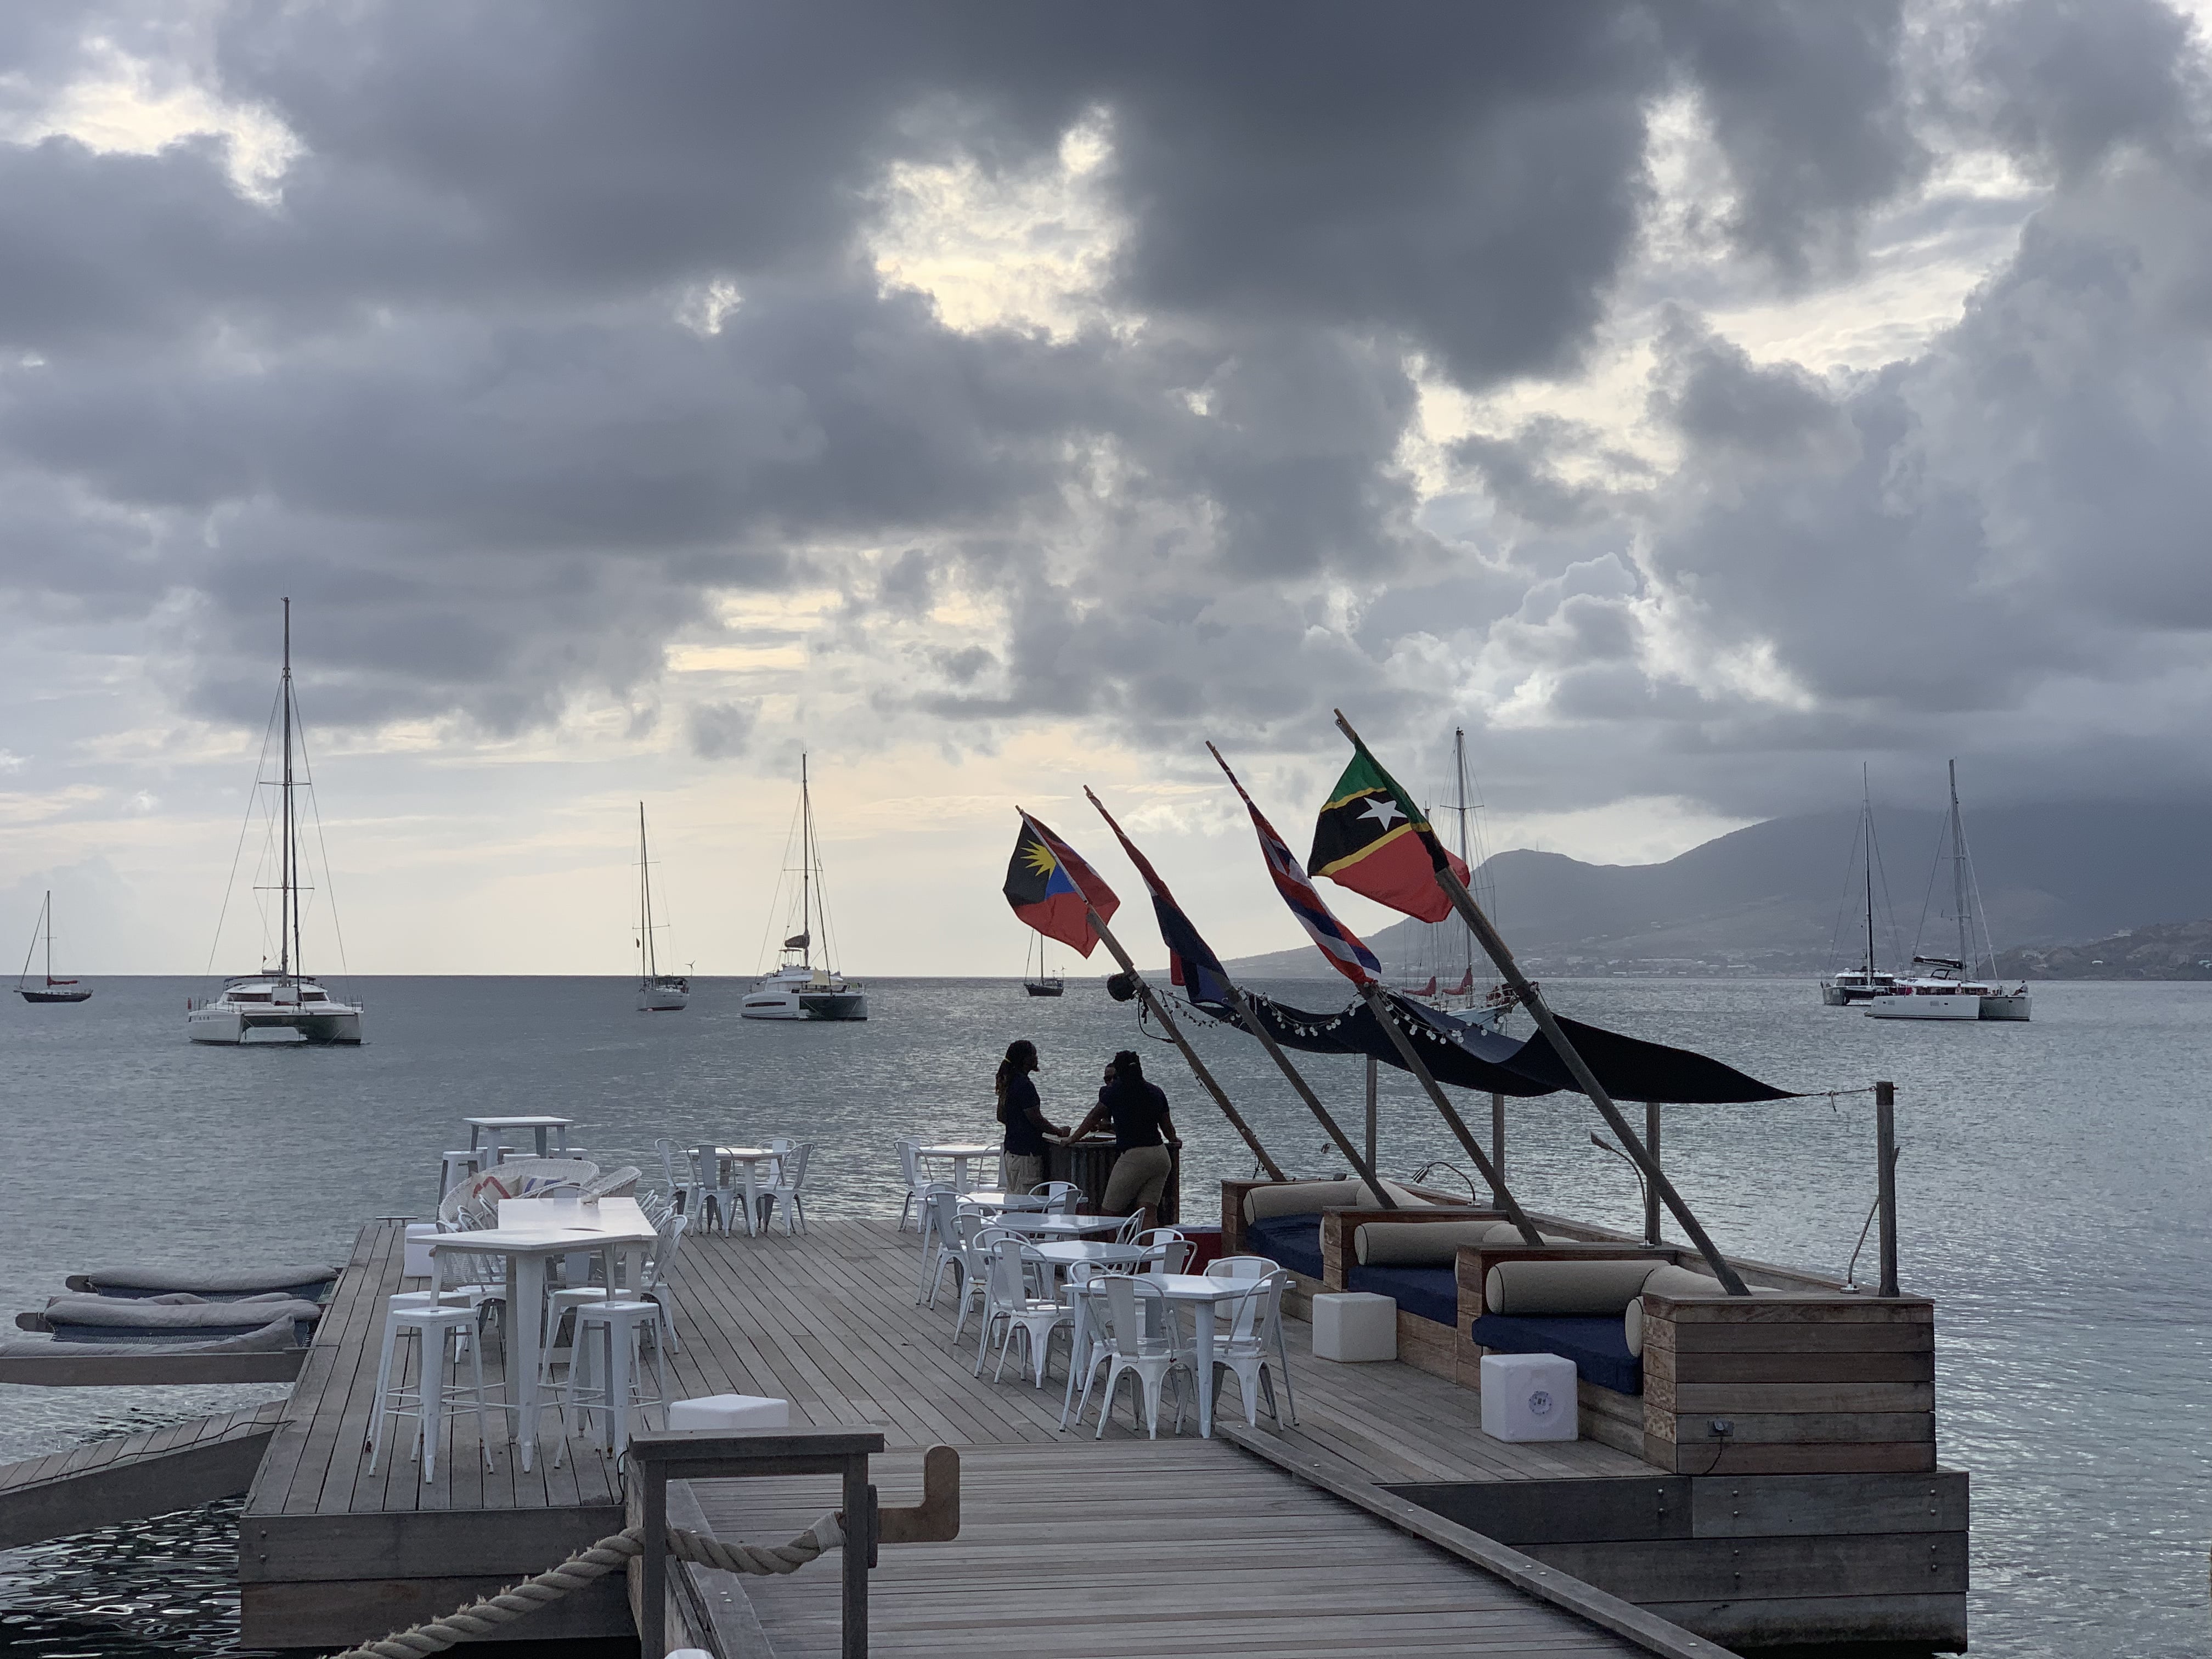 Park Hyatt St. Kitts: Hotel Review 24